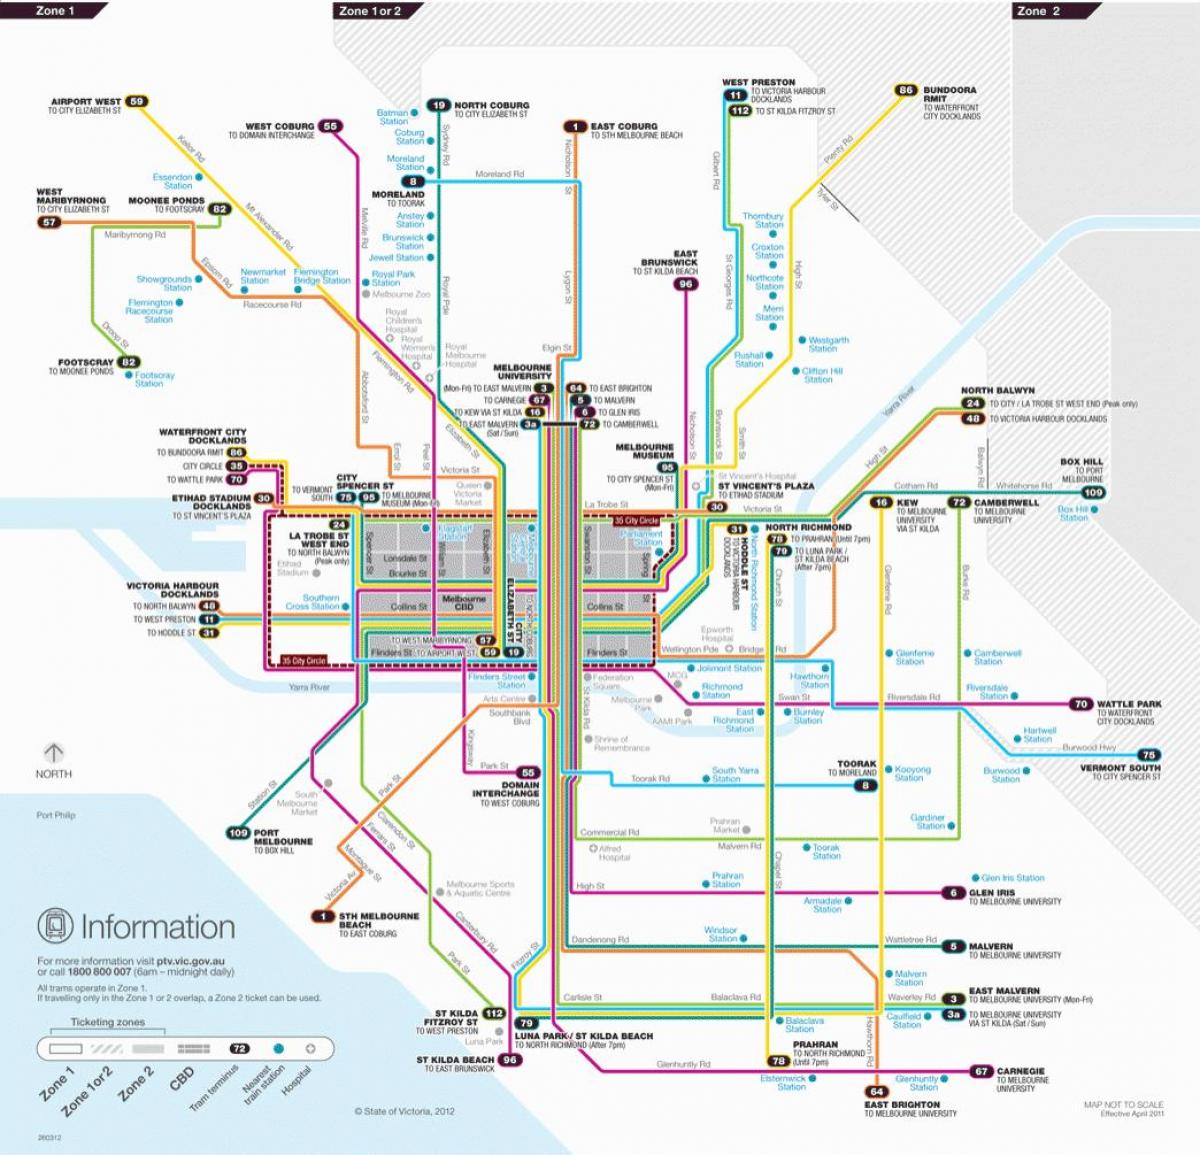 Melbourne tramvaj poti zemljevid